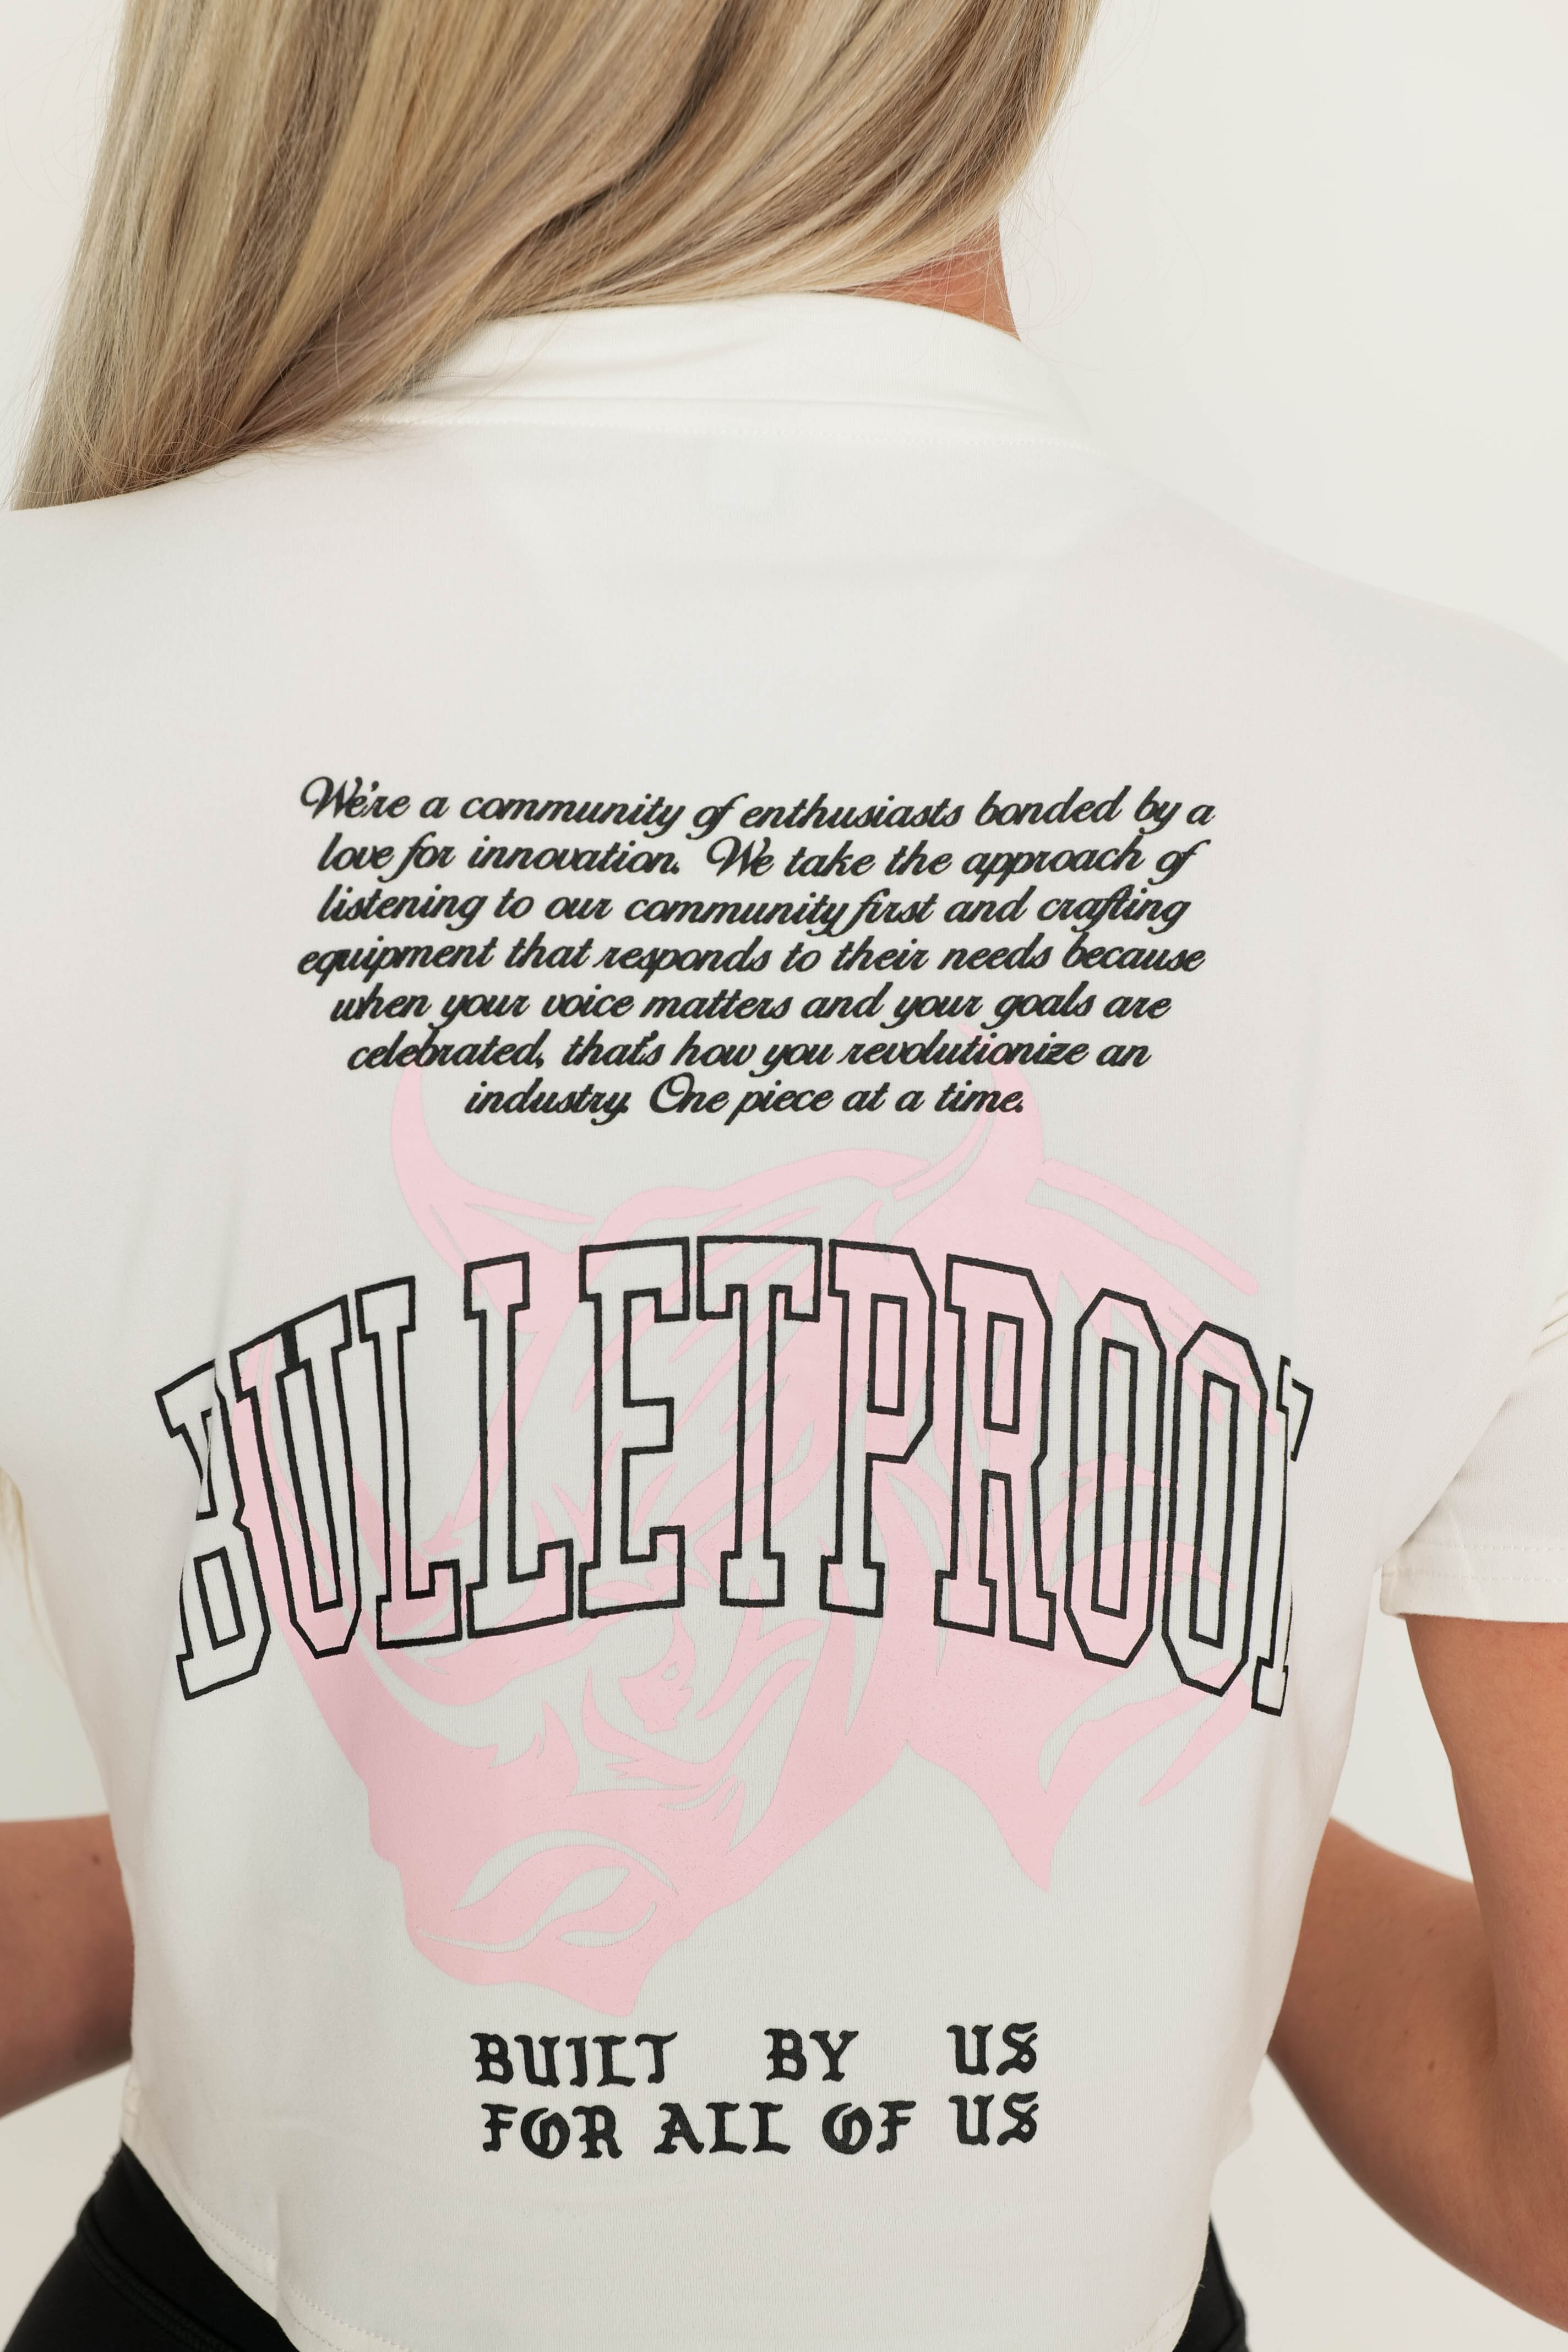 CROP - Bulletproof Power Team: Built by Us for Us